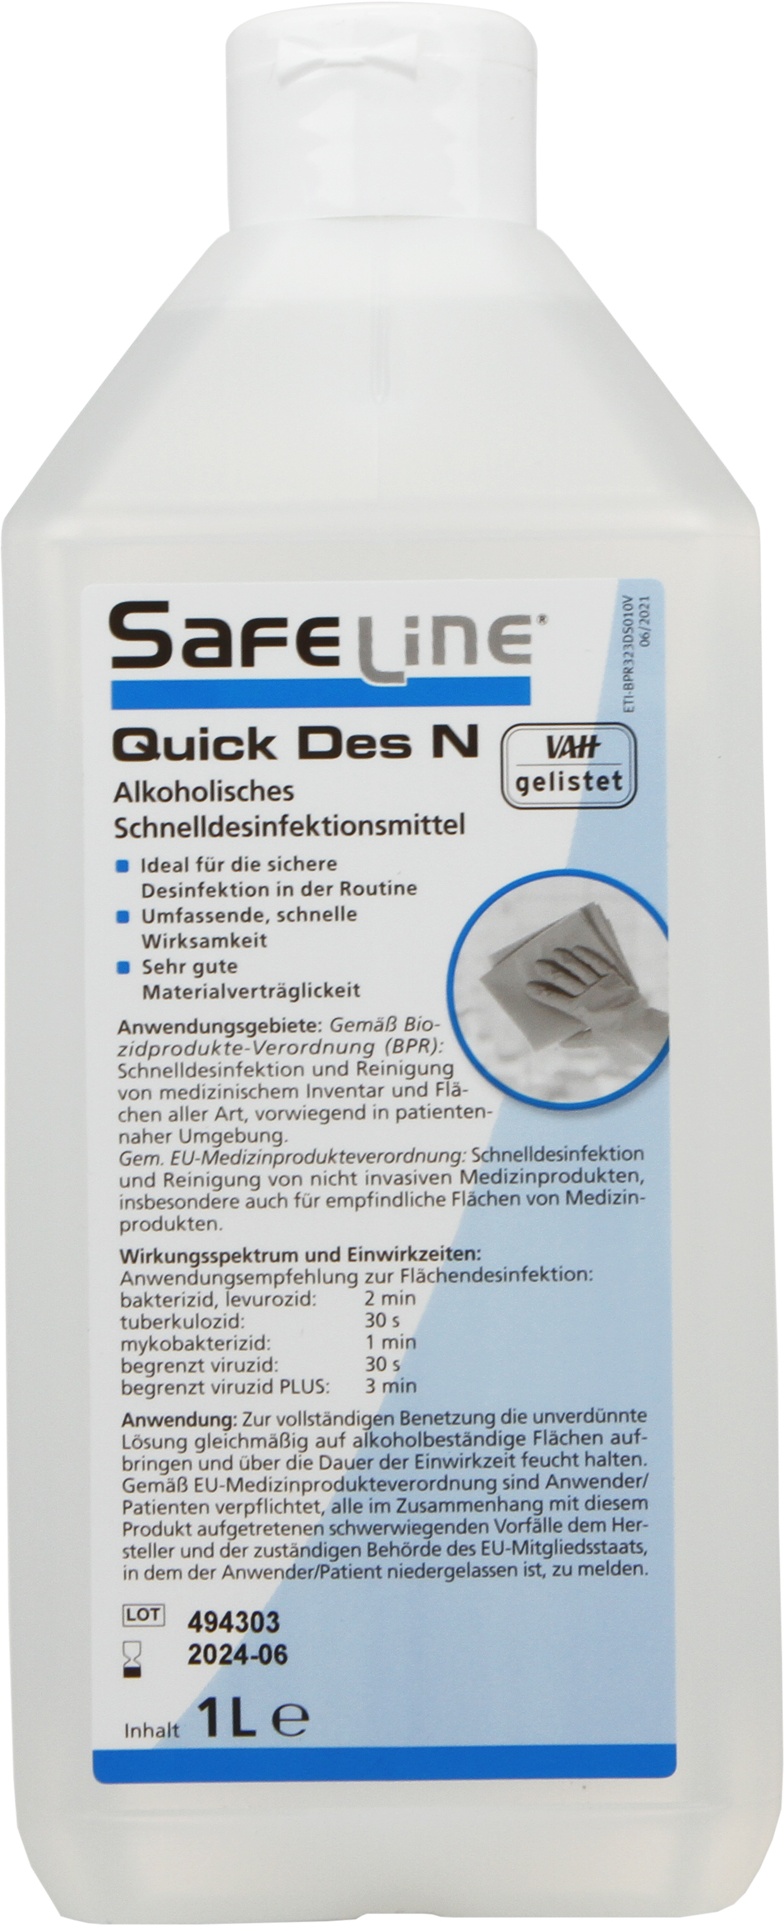 Safeline QUICK DES N Schnelldesinfektion 1 Liter